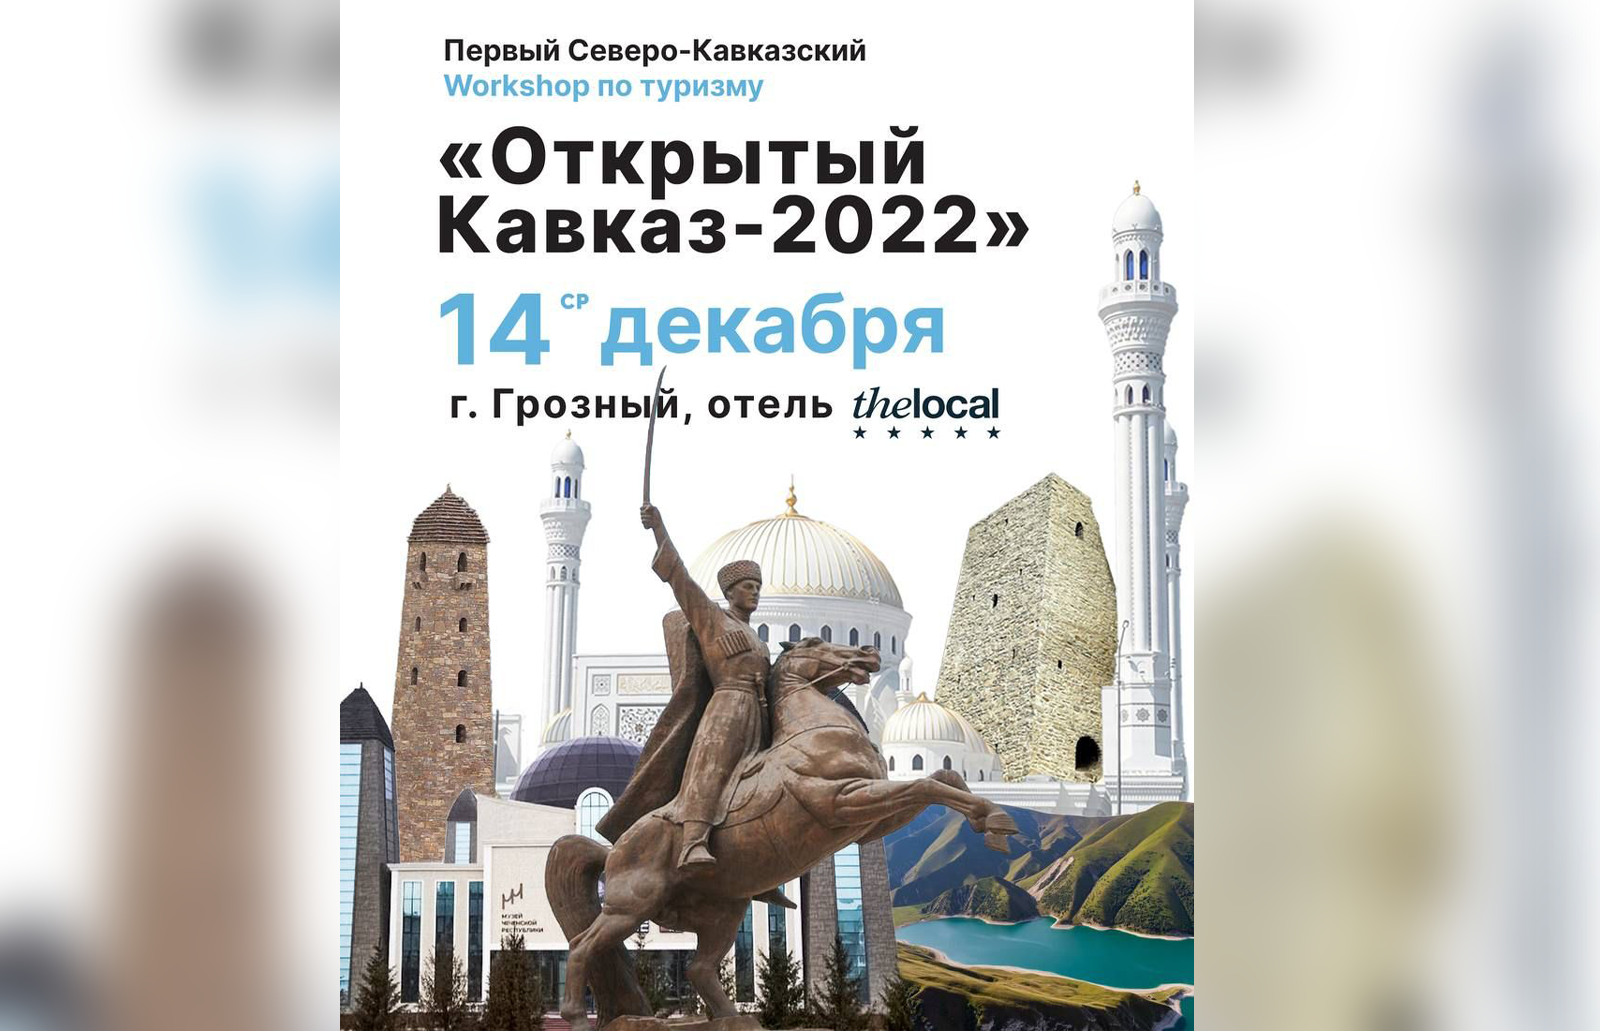 «Открытый Кавказ - 2022» объединит активных участников туристского рынка